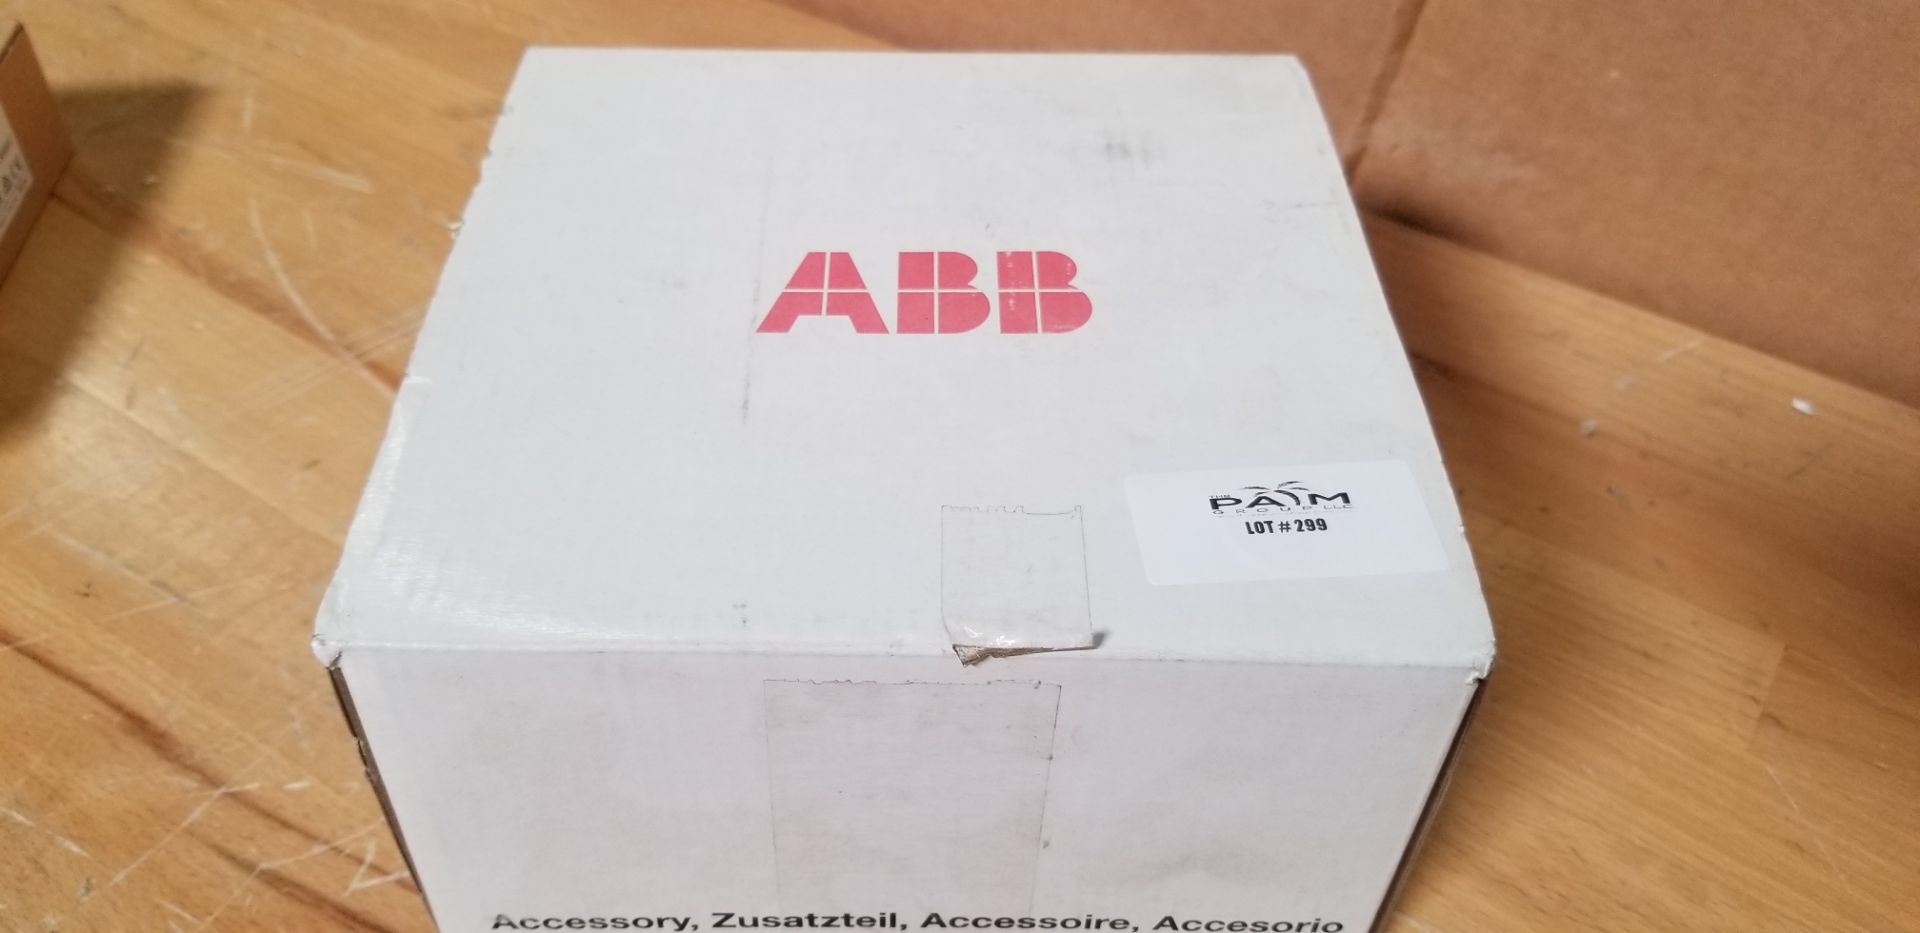 New ABB Motor Control Enclosure Kit MUL1-R3